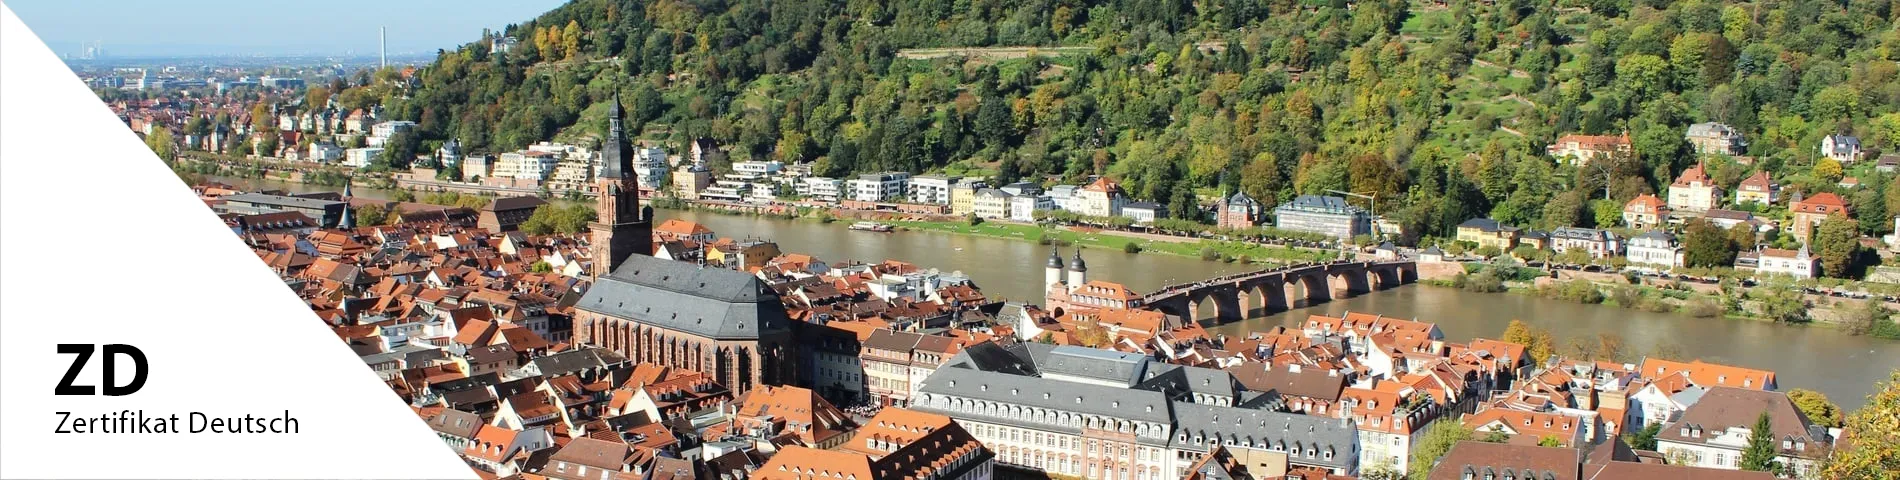 Heidelberg - Zertifikat Deutsch (ZD)